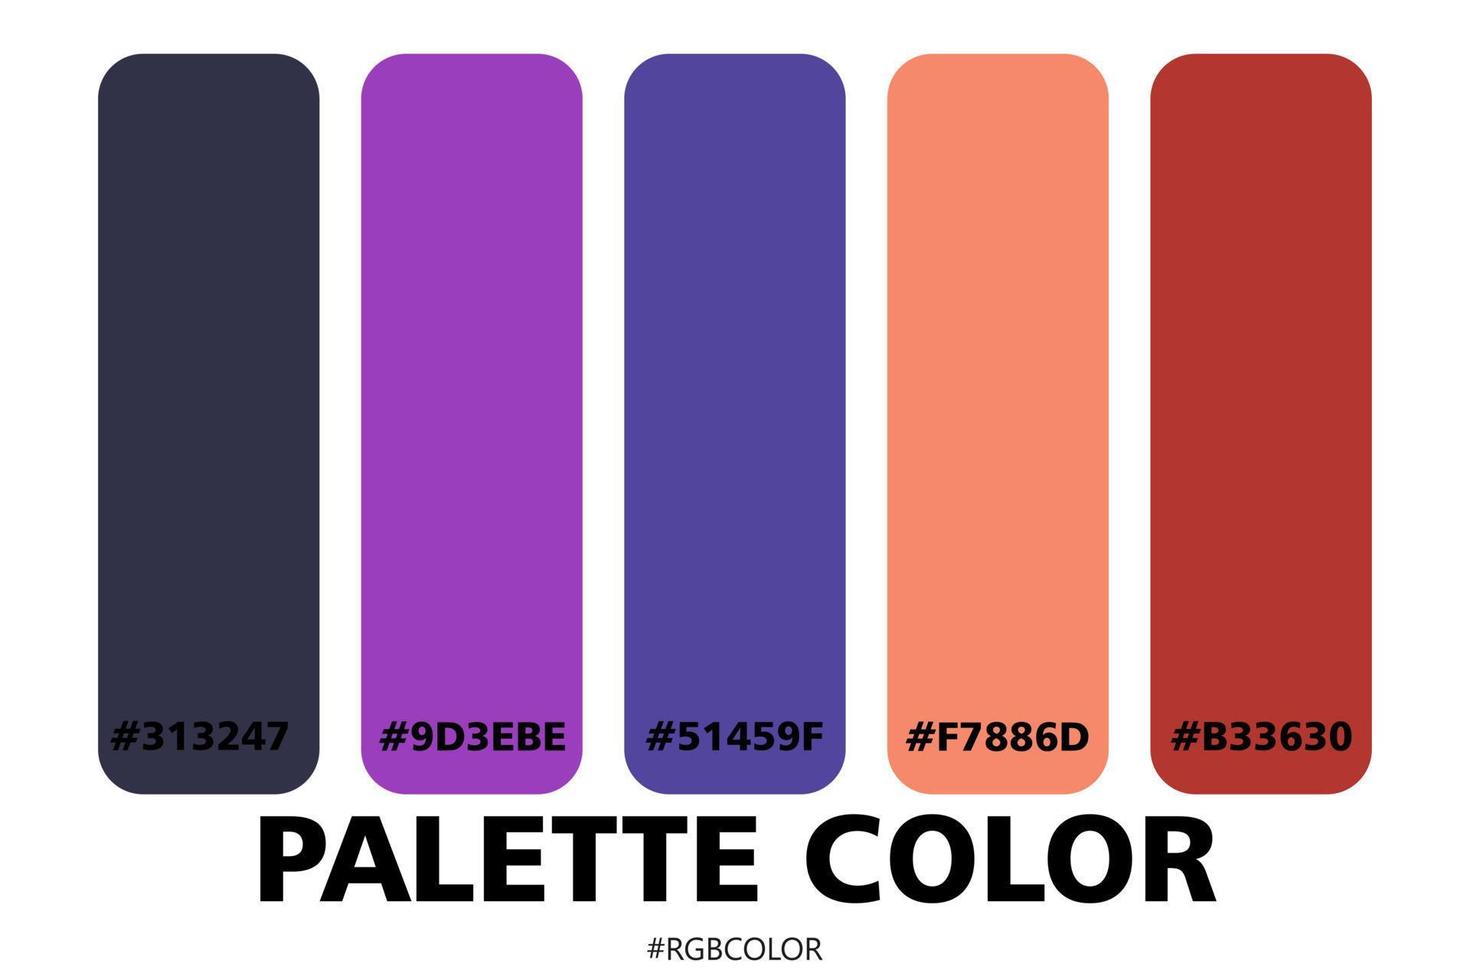 une collection de palettes de couleurs précises avec des codes, parfaites pour être utilisées par les illustrateurs vecteur